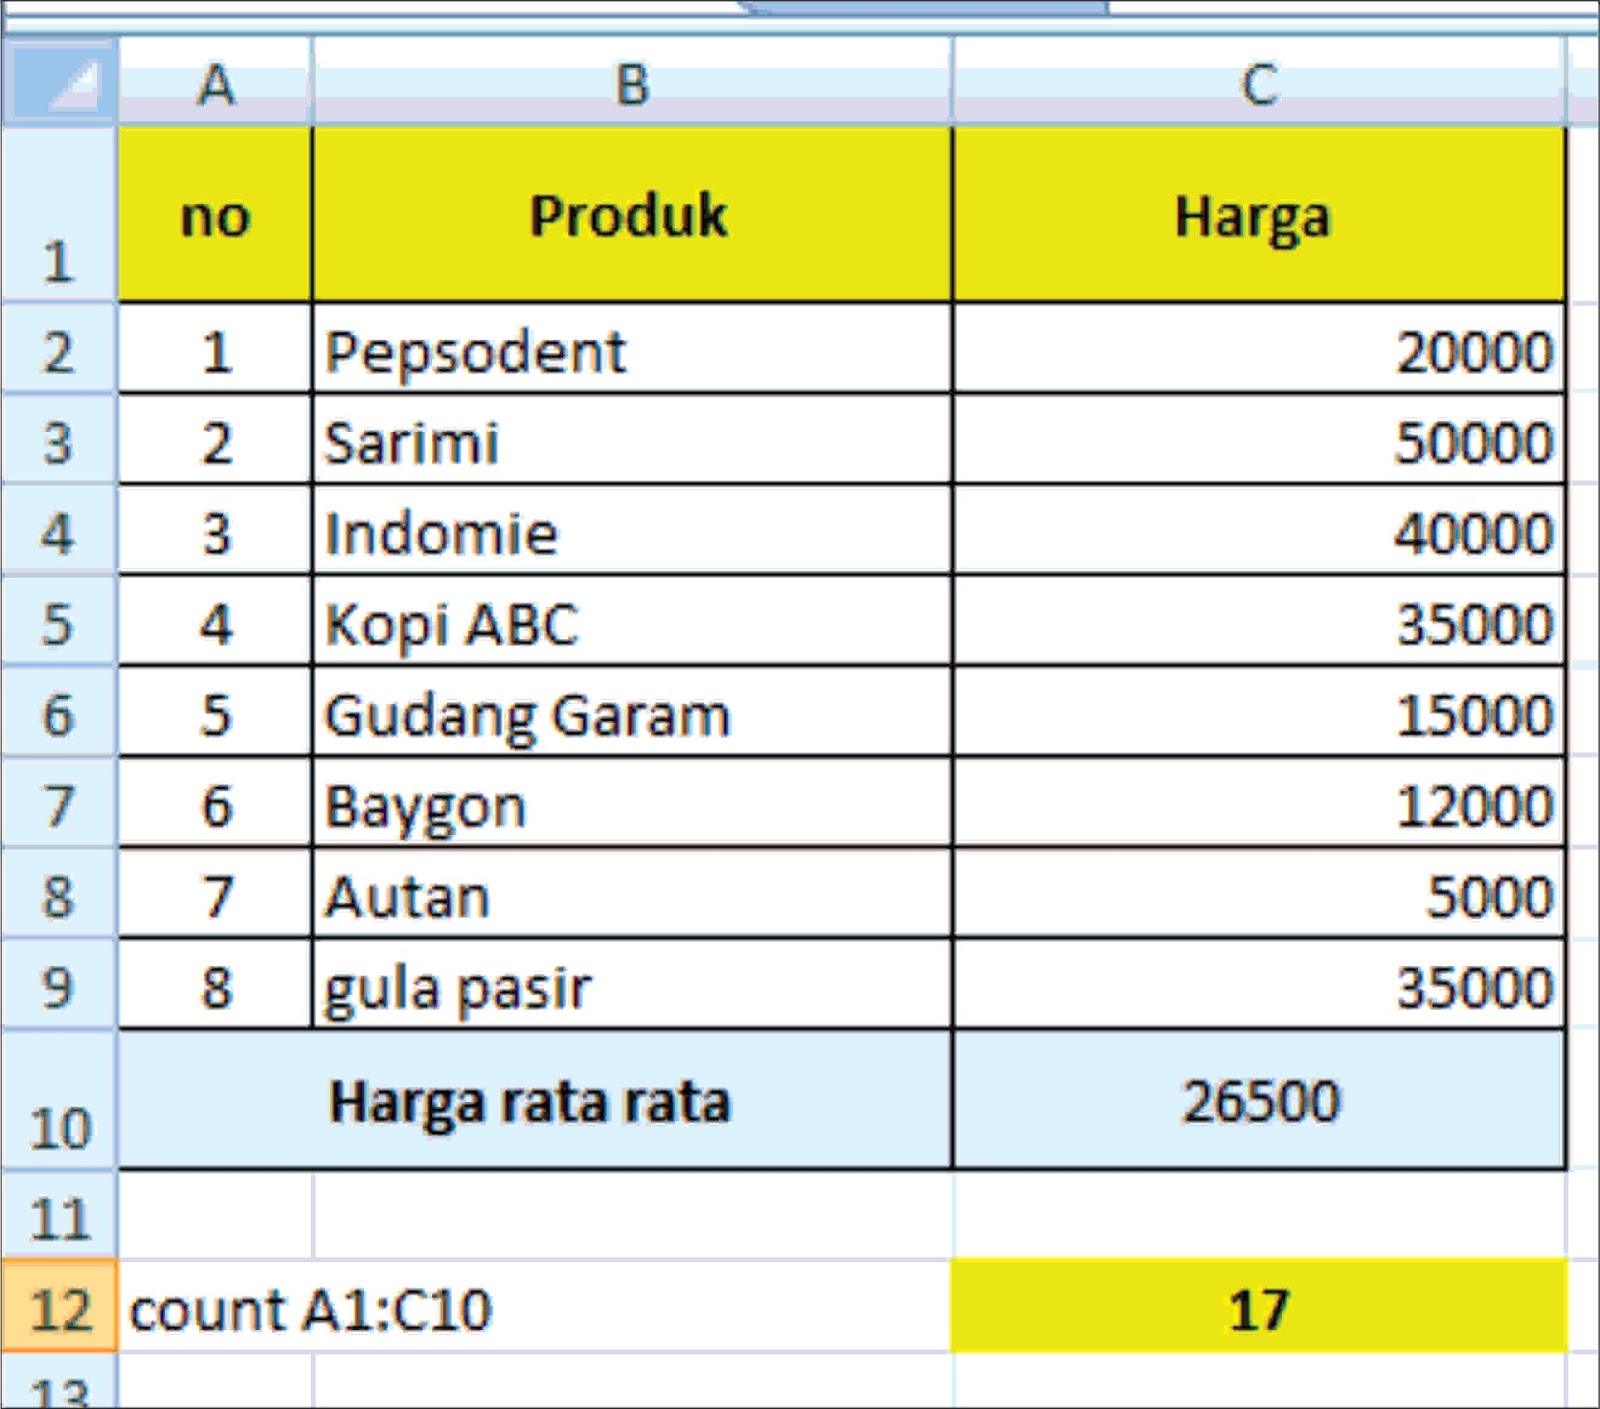 Latihan soal fungsi Sum Average min dan max pada Microsoft Excel untuk Tabel penghasilan